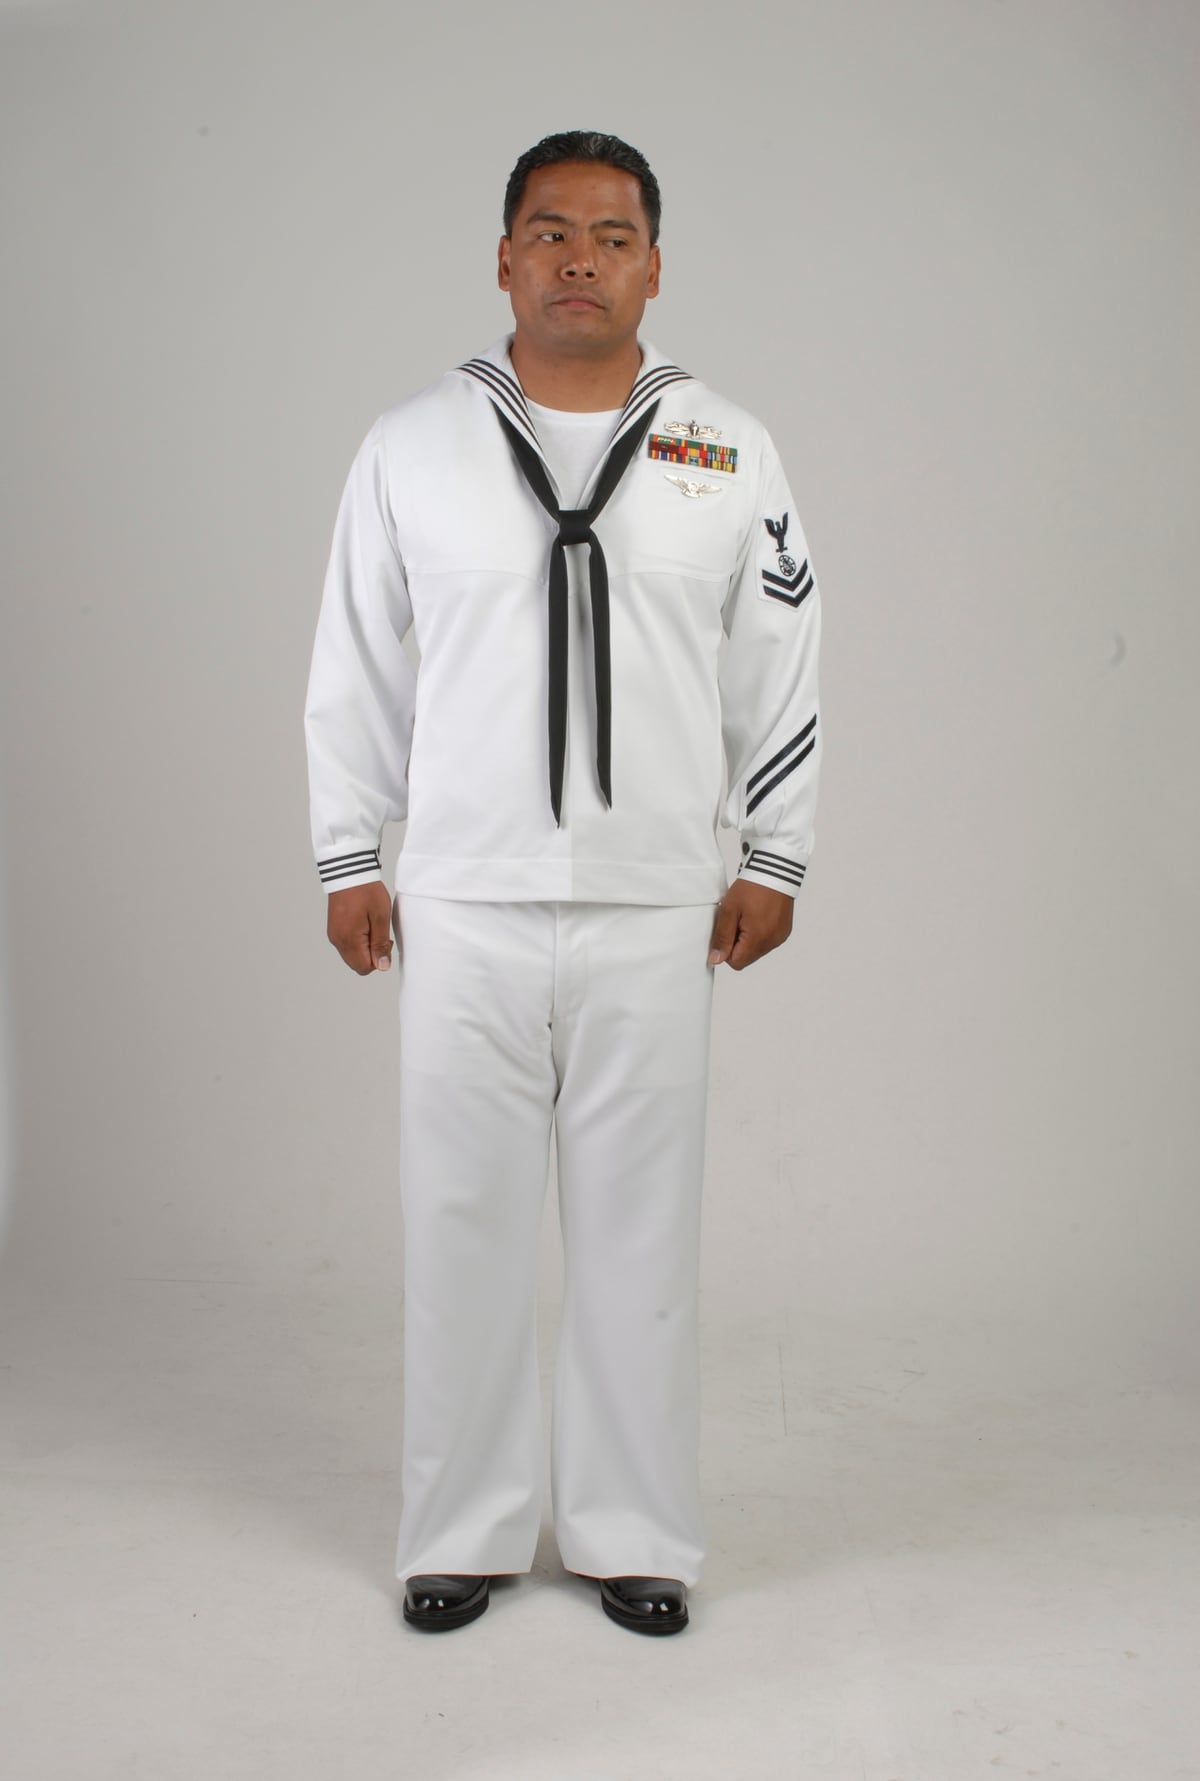 Navadmin/guidance for new dress whites? r/navy